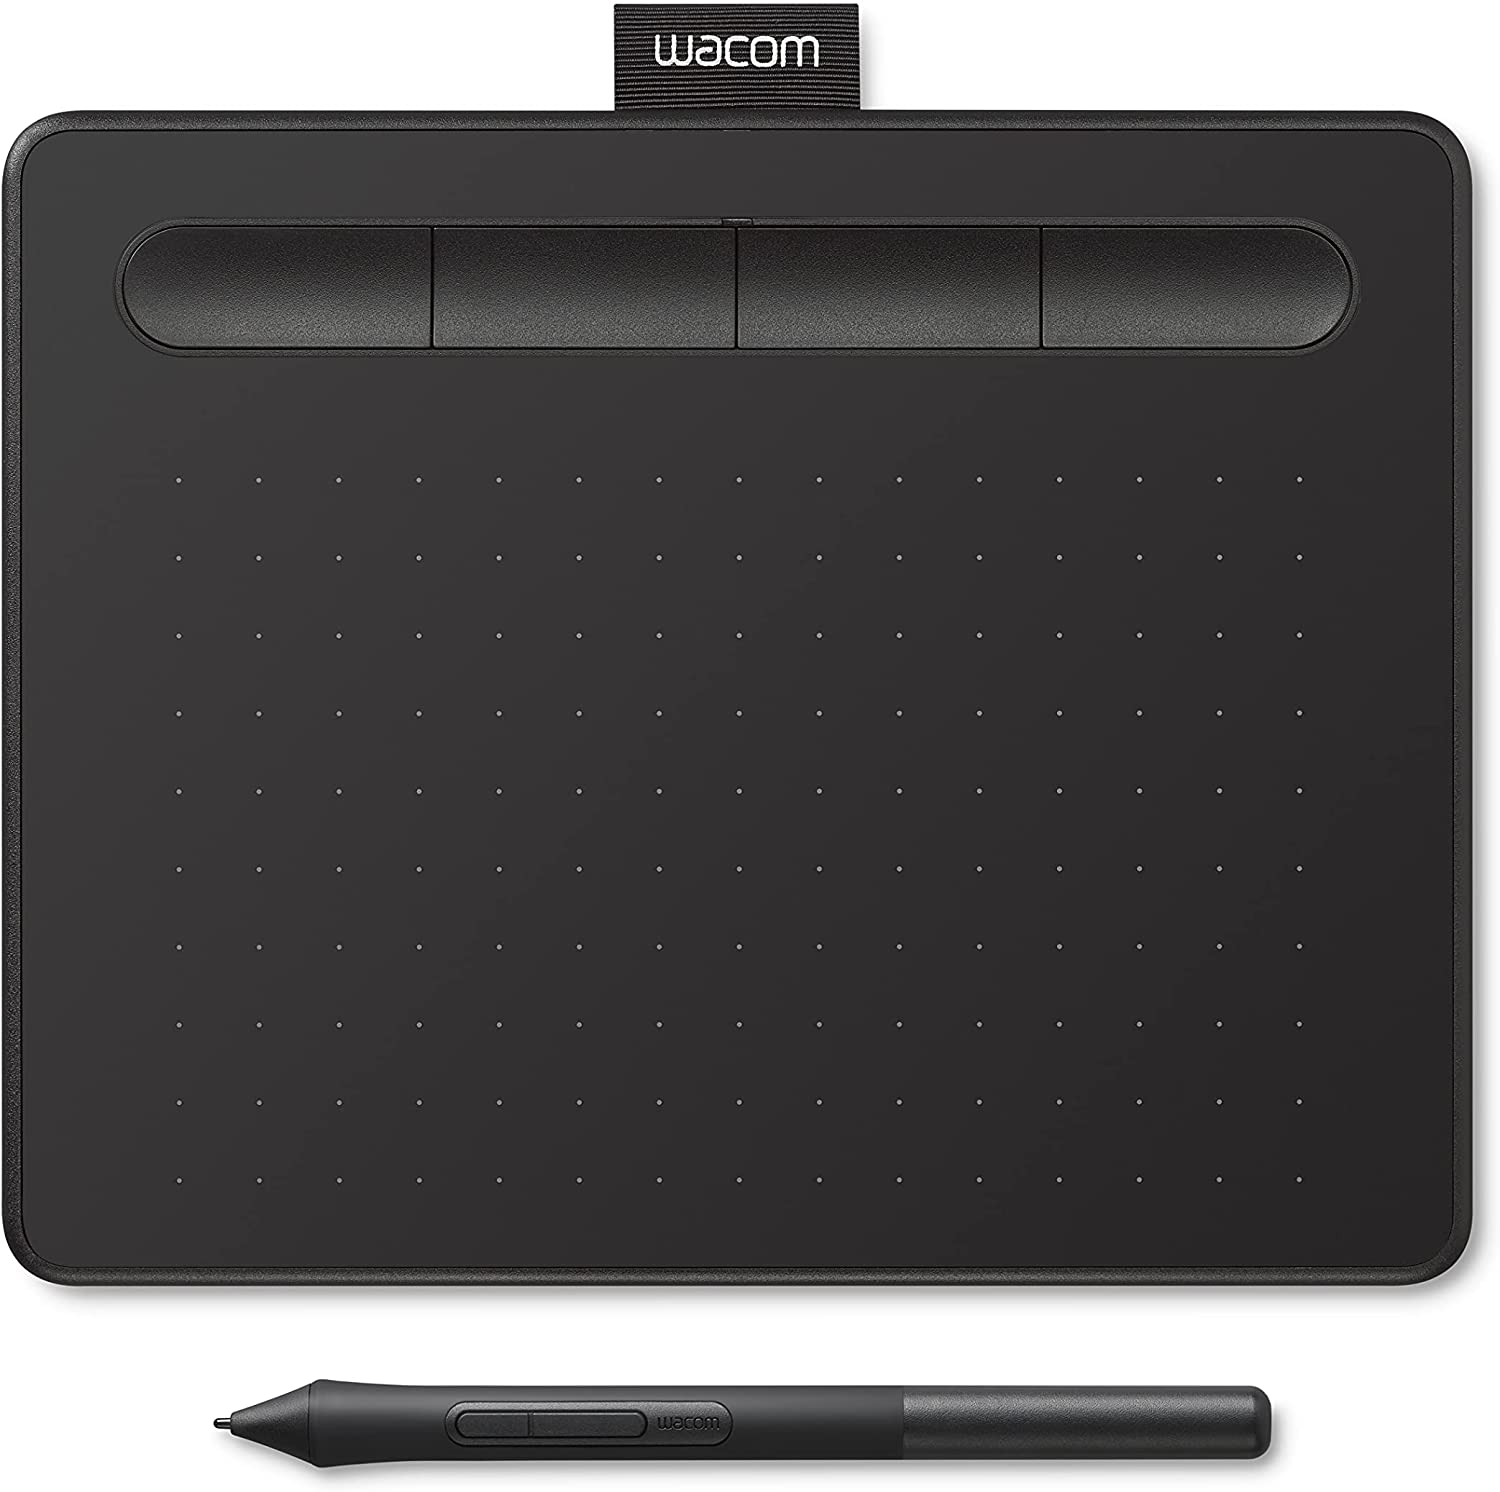 Thumbnail of Wacom Drawing Tablet.